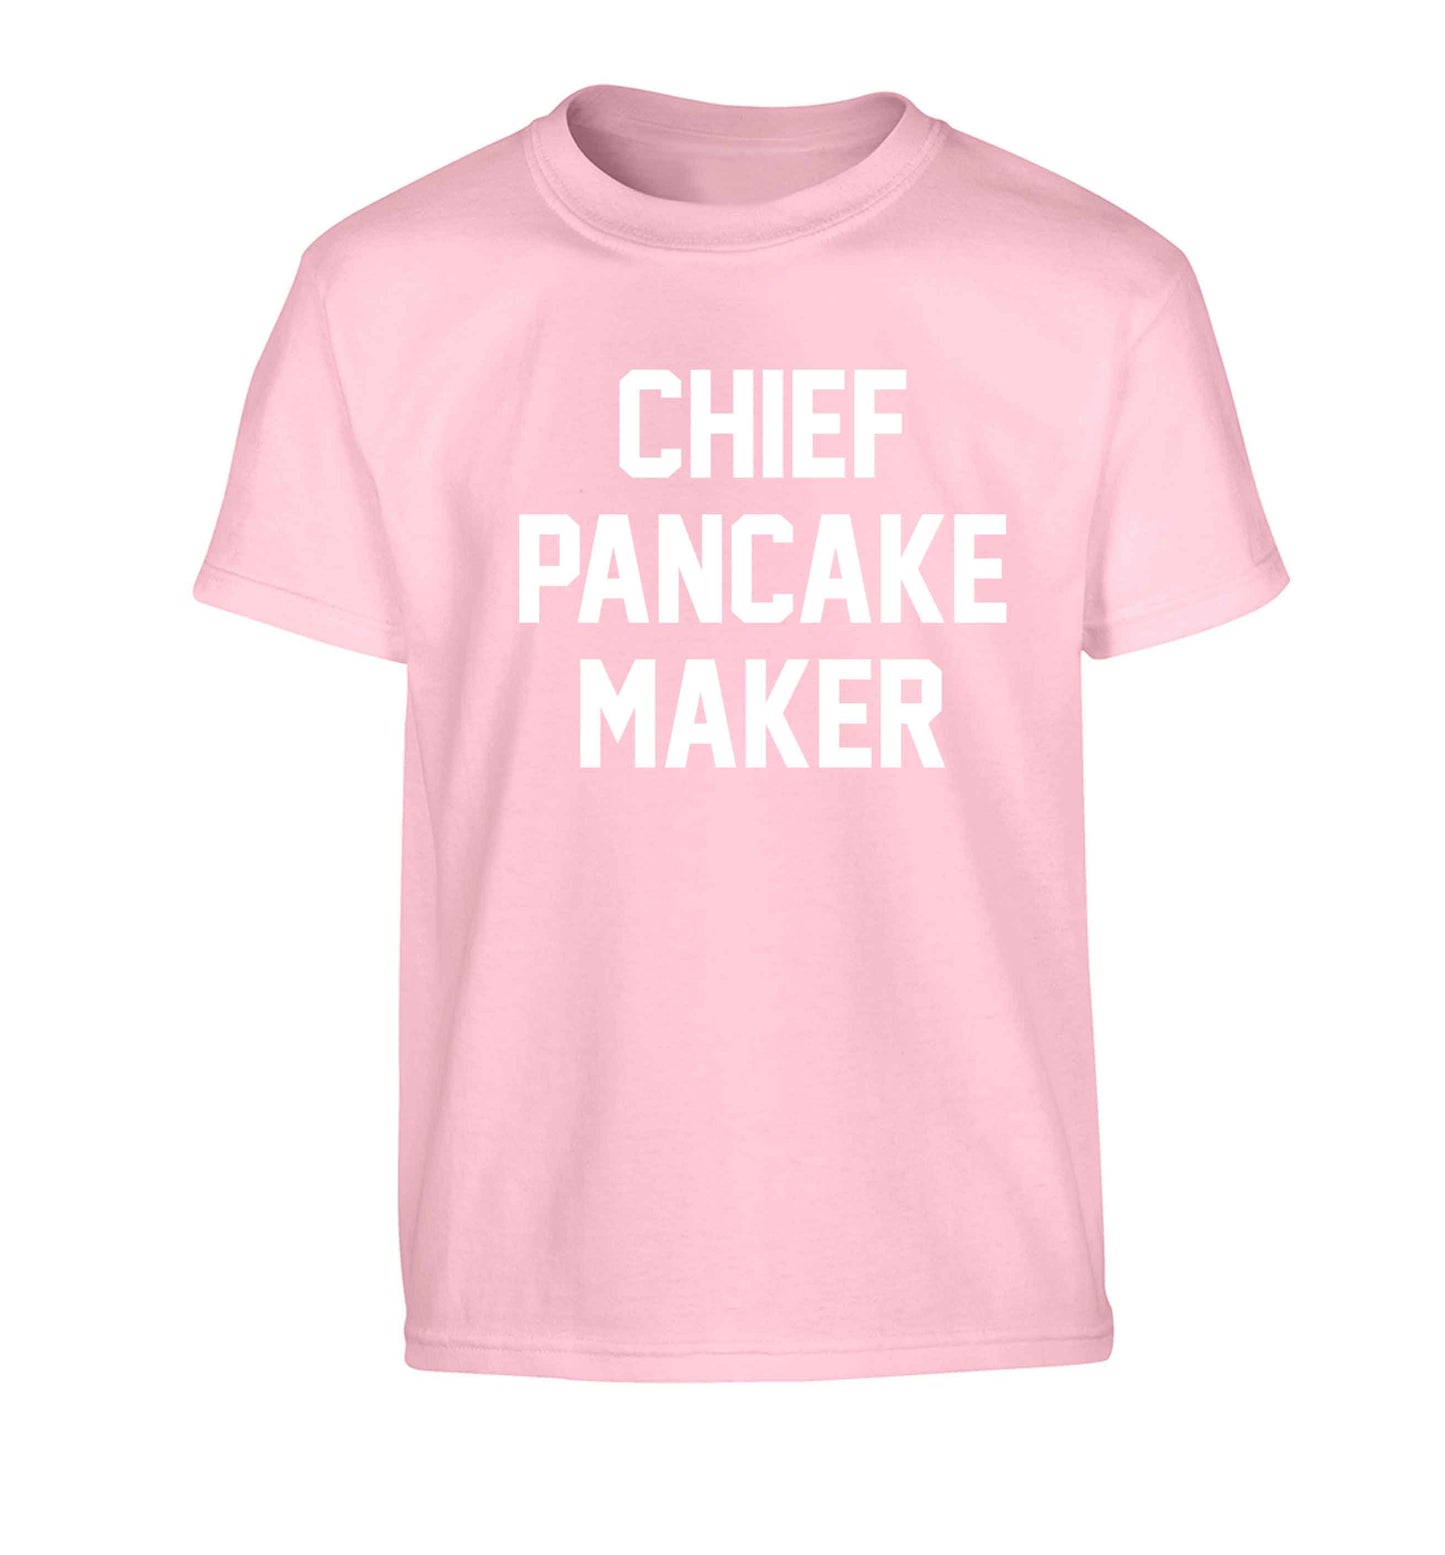 Chief pancake maker Children's light pink Tshirt 12-13 Years